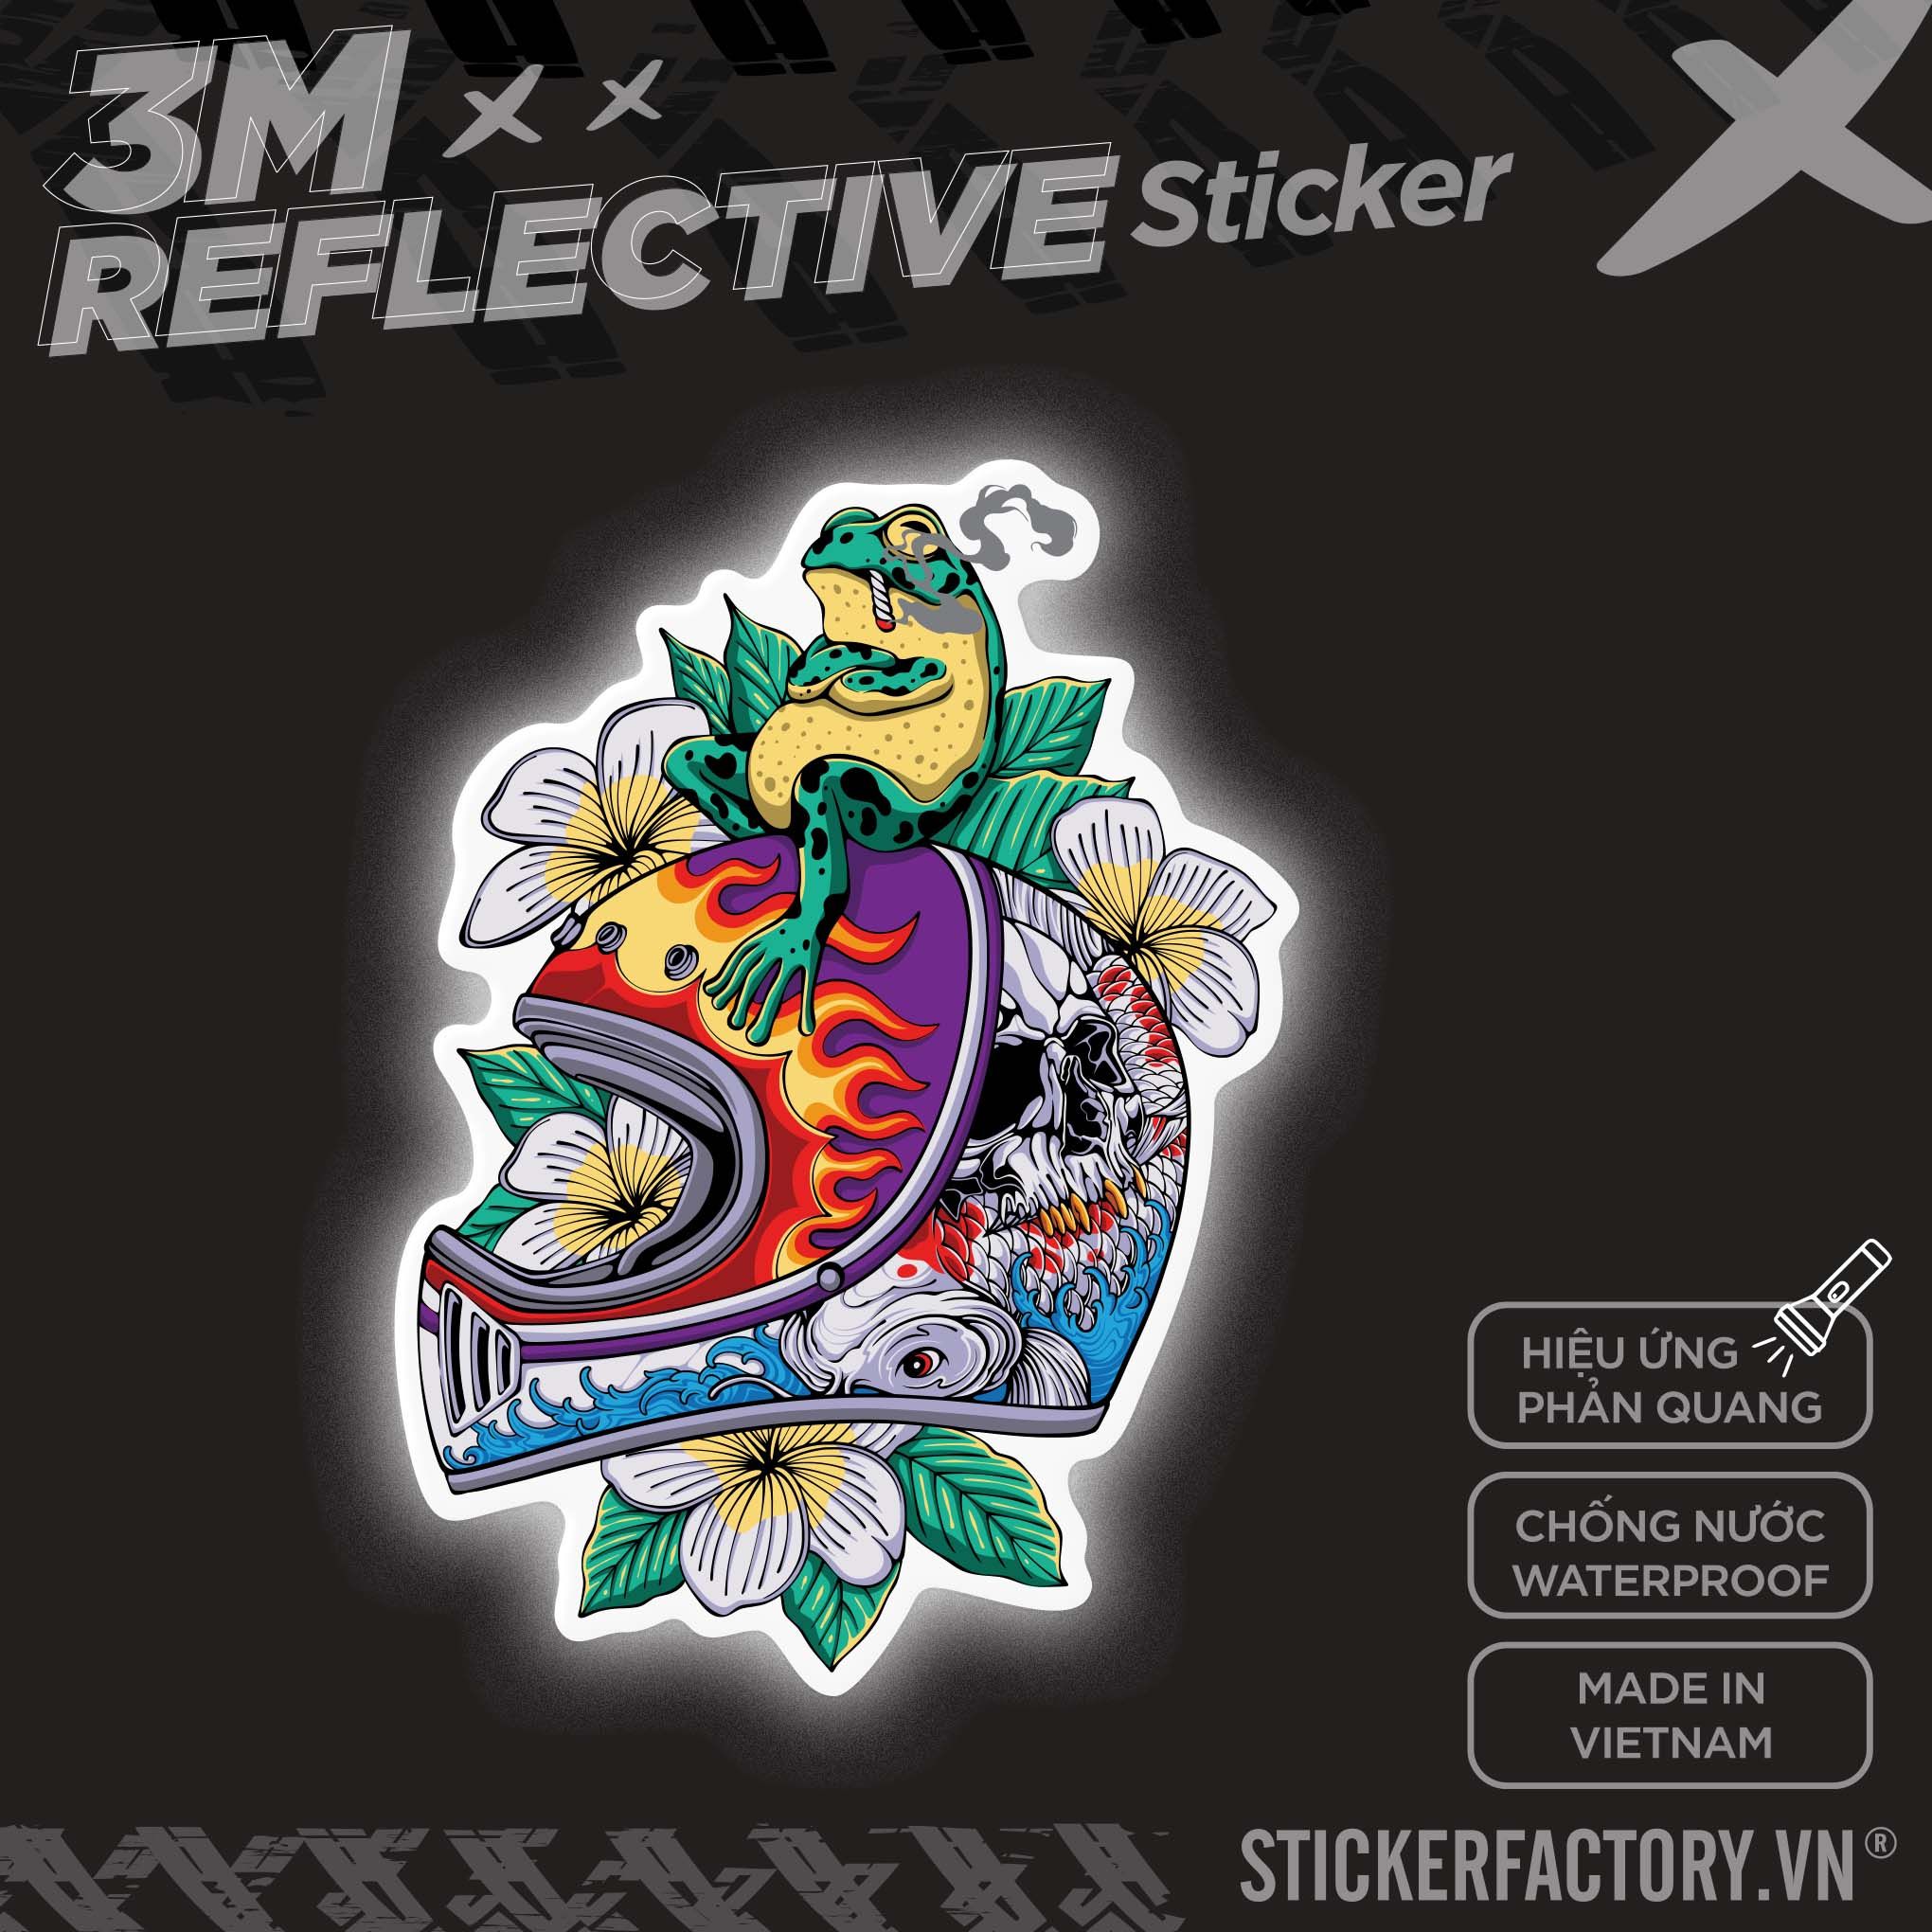 SMOKING FROG RETRO HELMET 3M - Reflective Sticker Die-cut